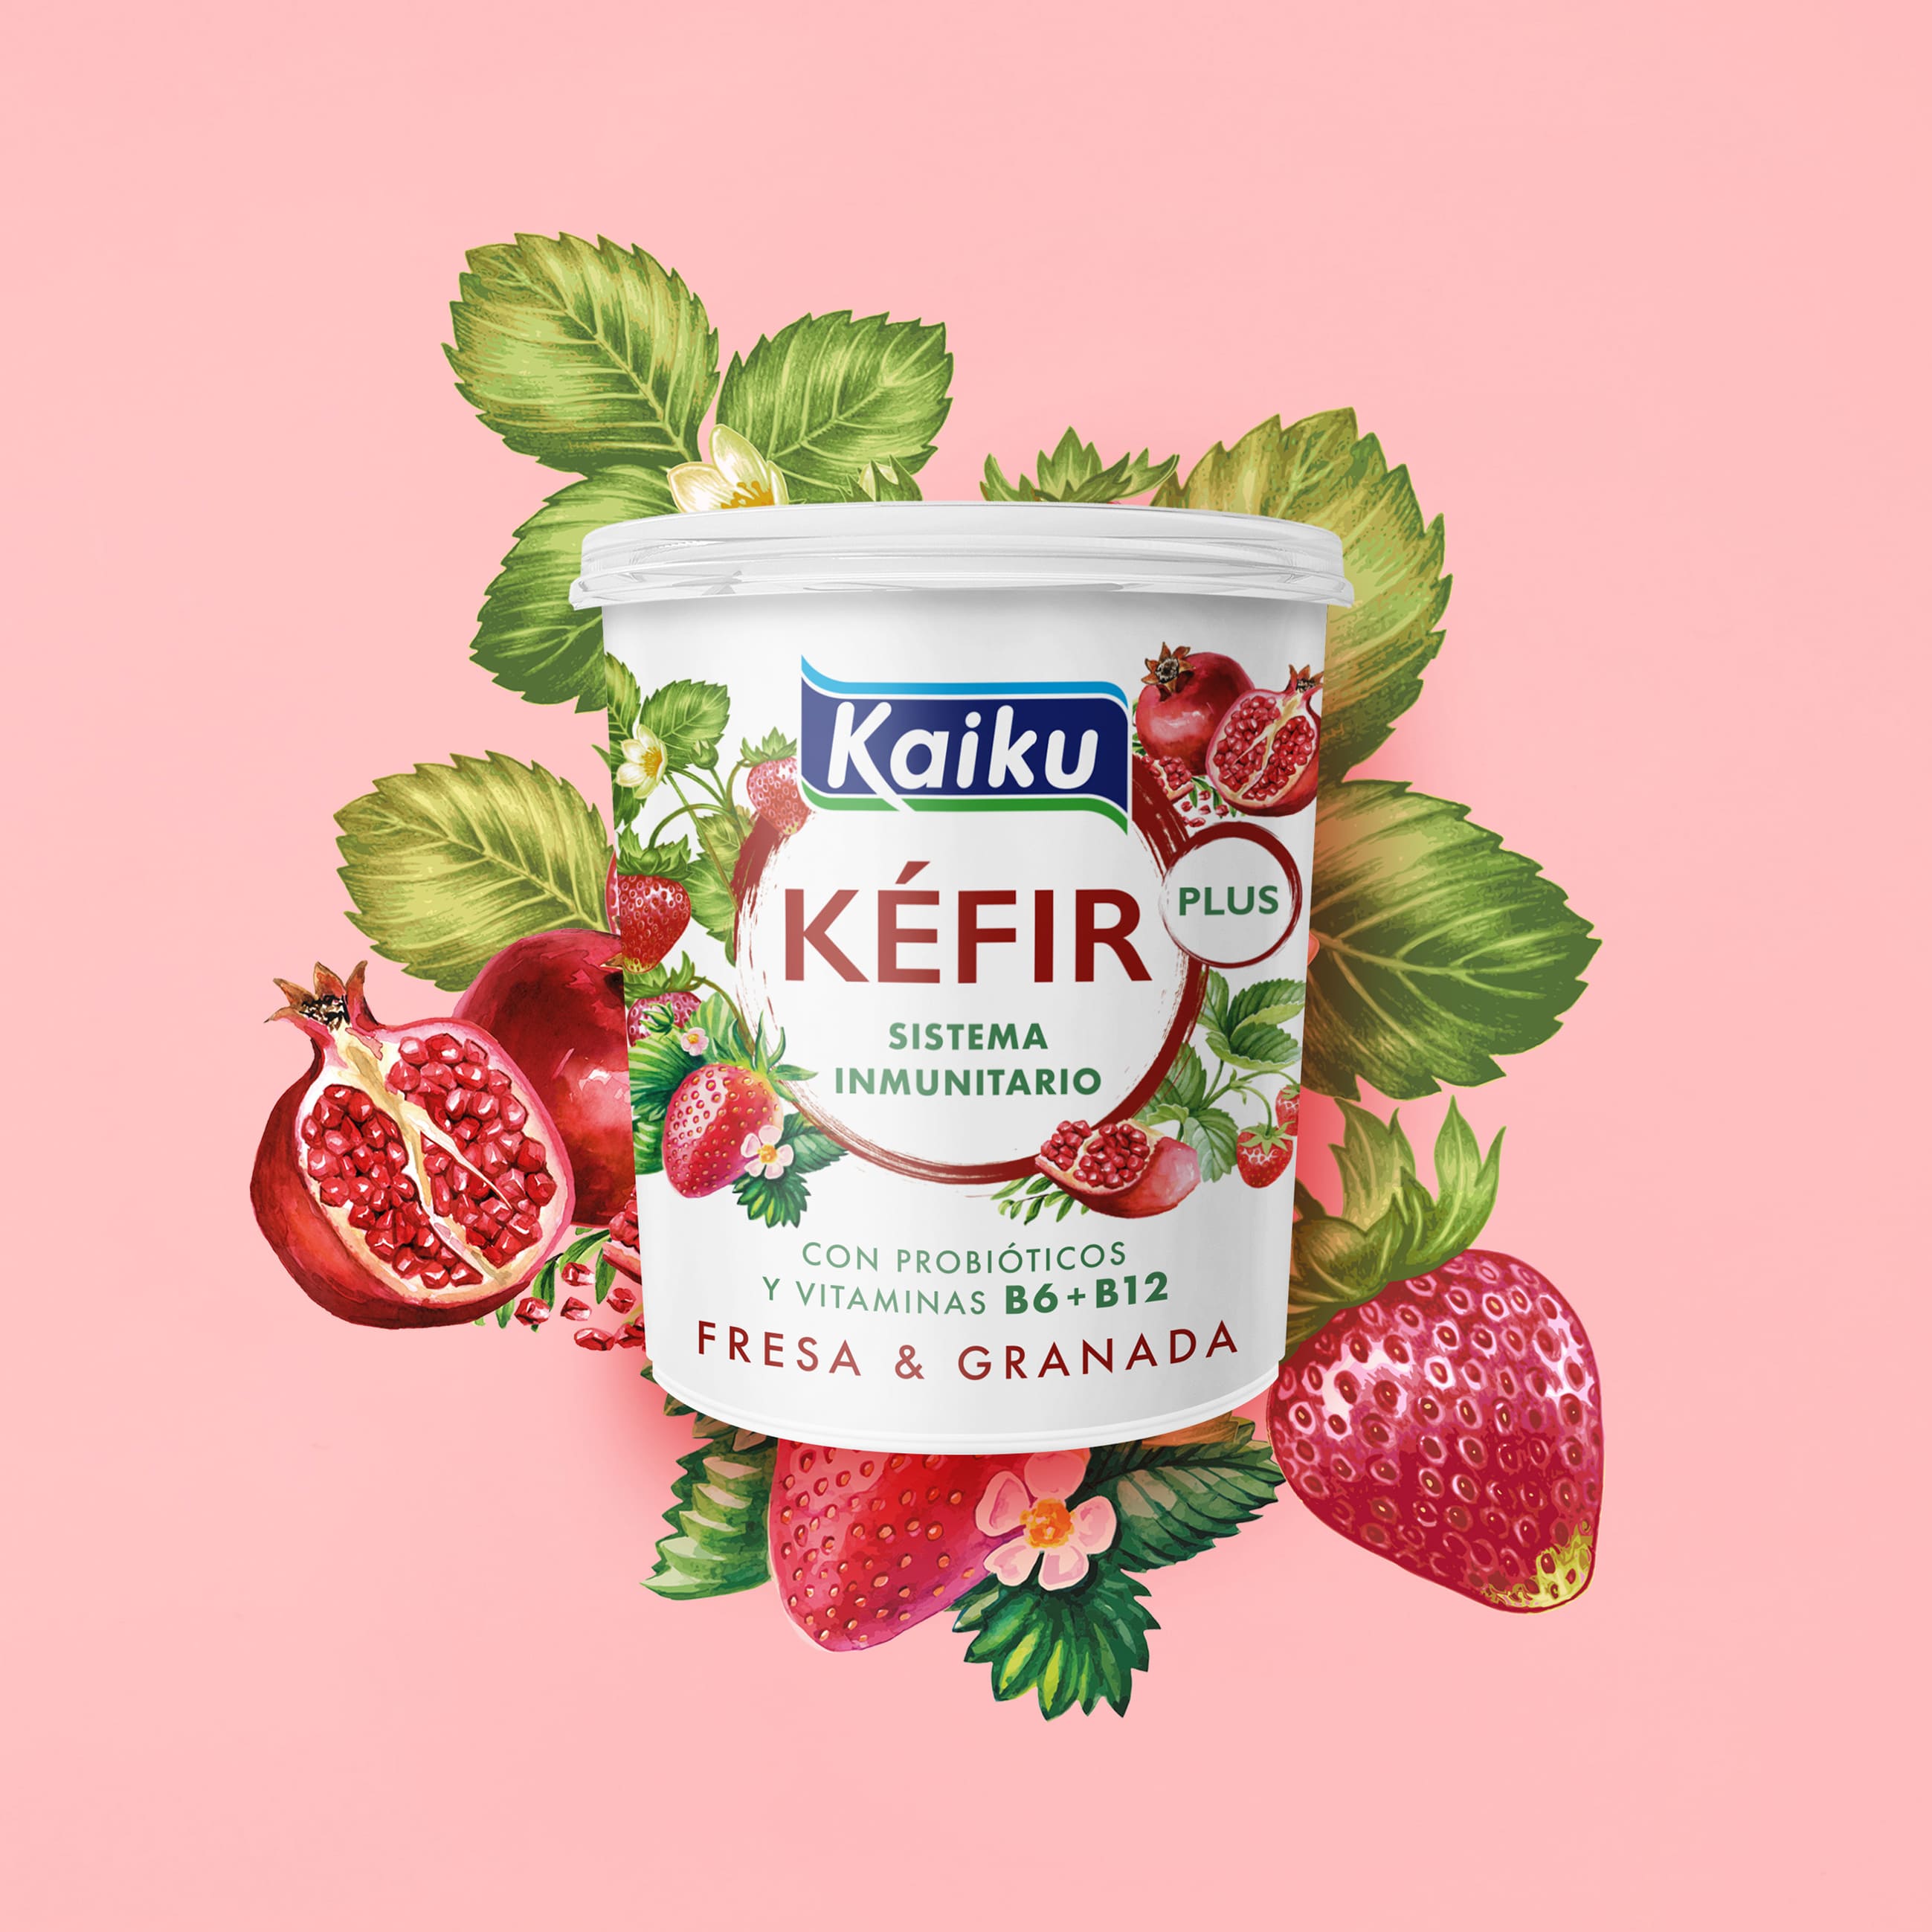 Kaiku Packaging Design – Super Kéfir for Better Health